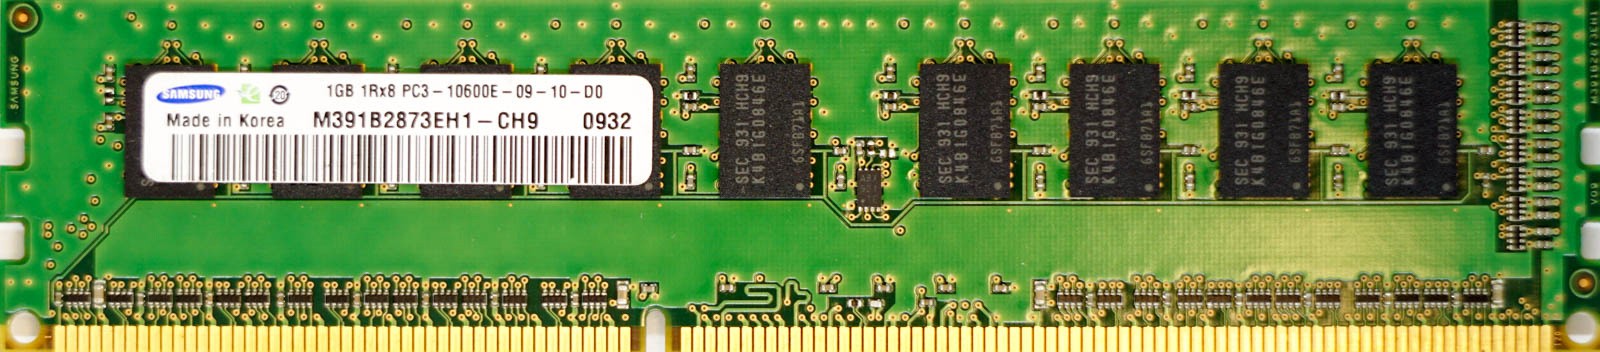 Samsung - 1GB PC3-10600E (DDR3-1333Mhz, 1RX8)